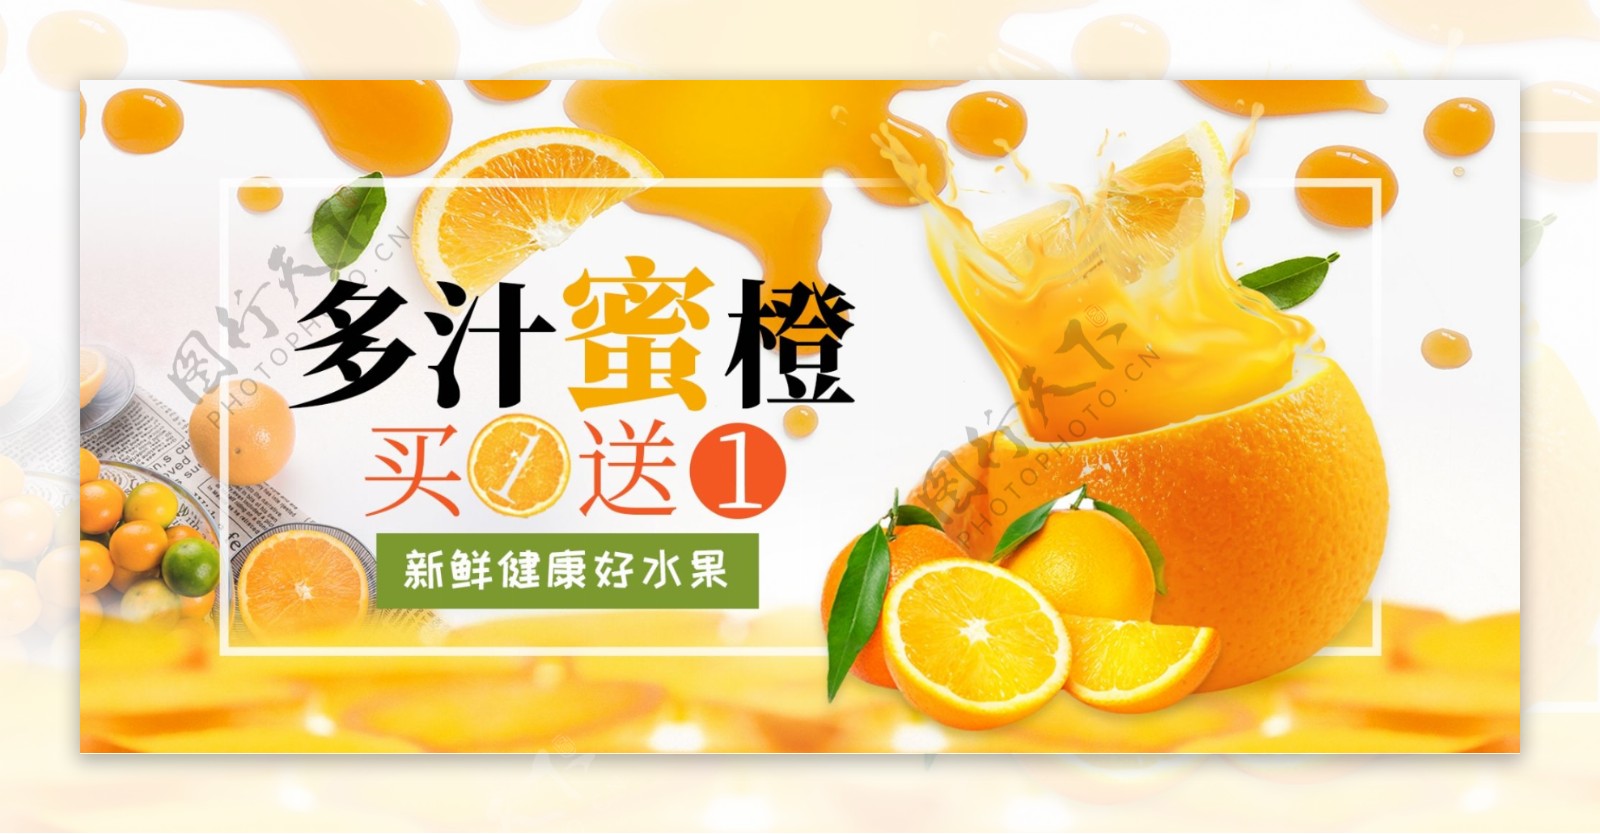 水果橙子柑橘电商首页活动促销banner